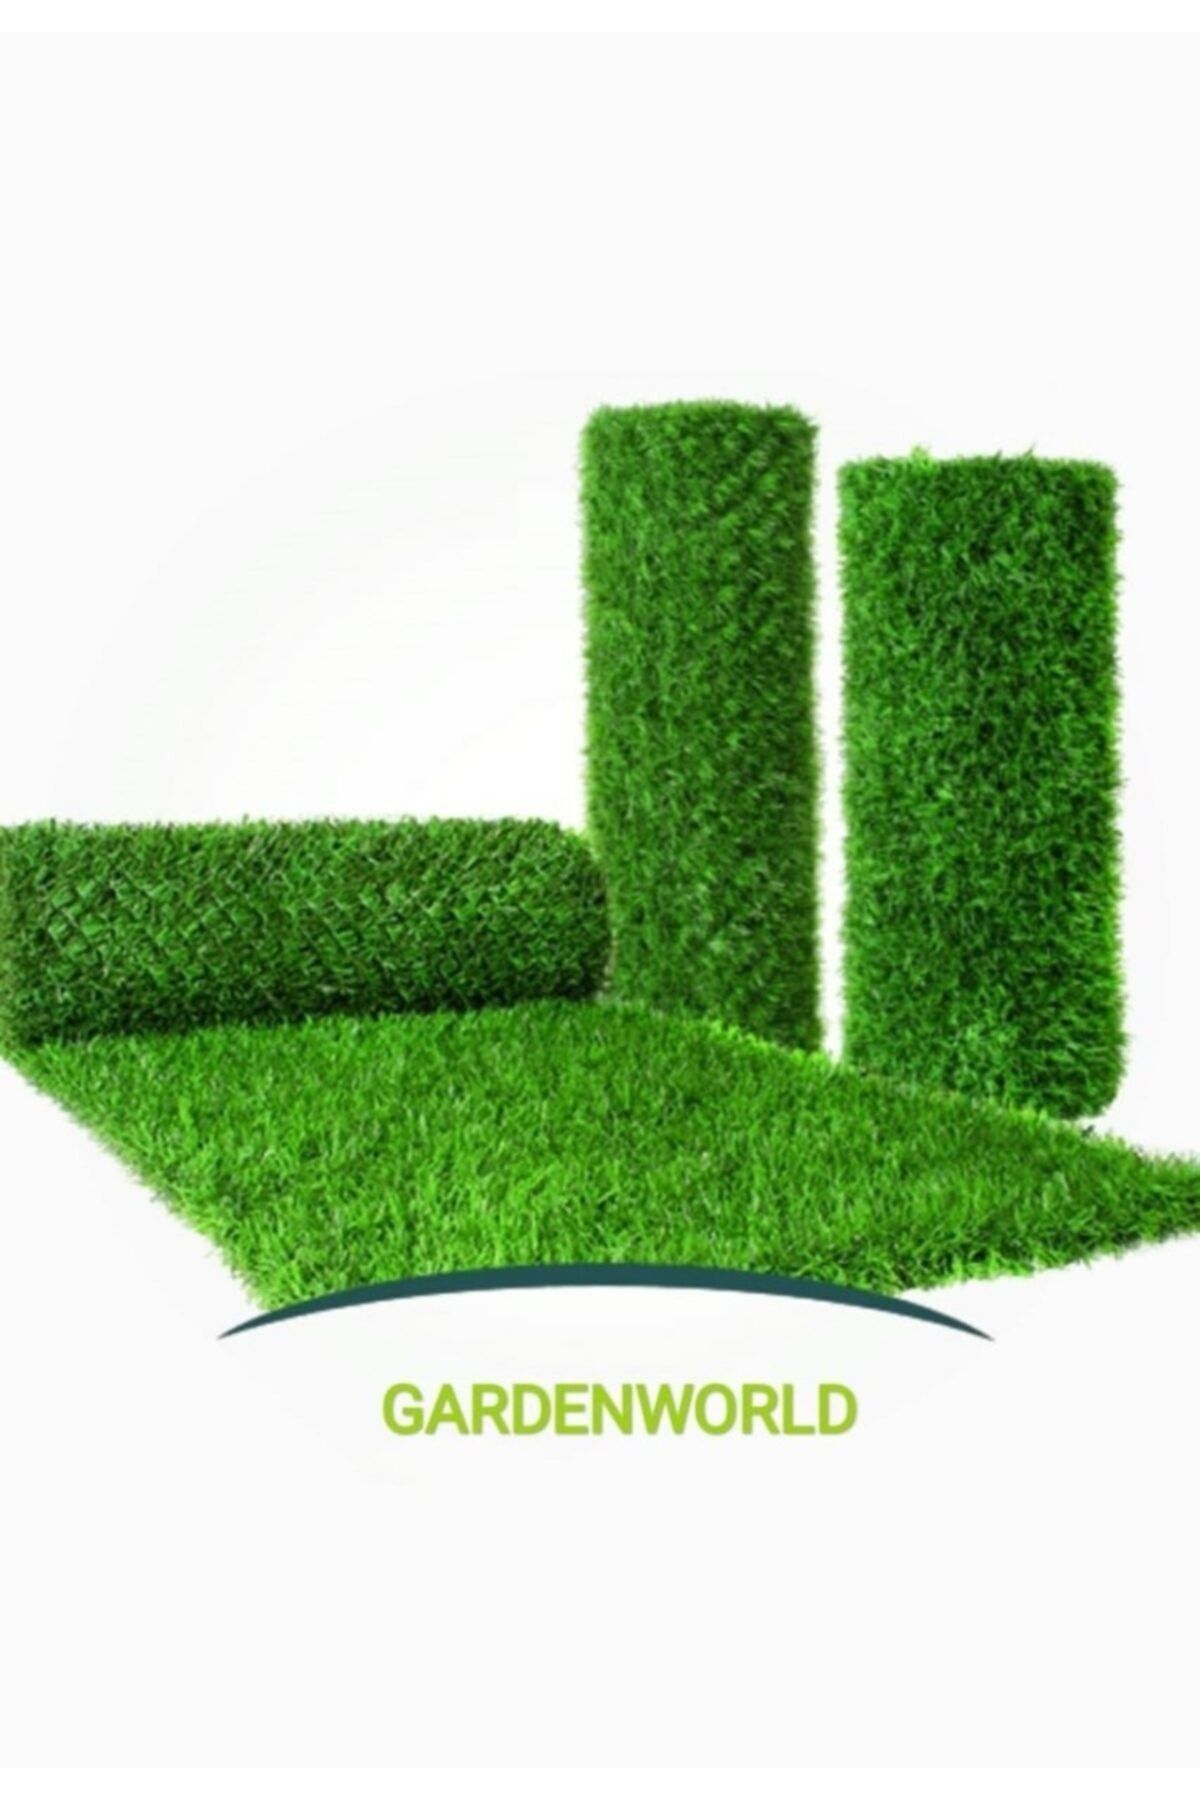 gardenworld Hat Tel Çit- Çim Çit Bahçe Teli Çim Görünümlü Tel -150 Cm X 10 Metre Bağ Teli Içinde